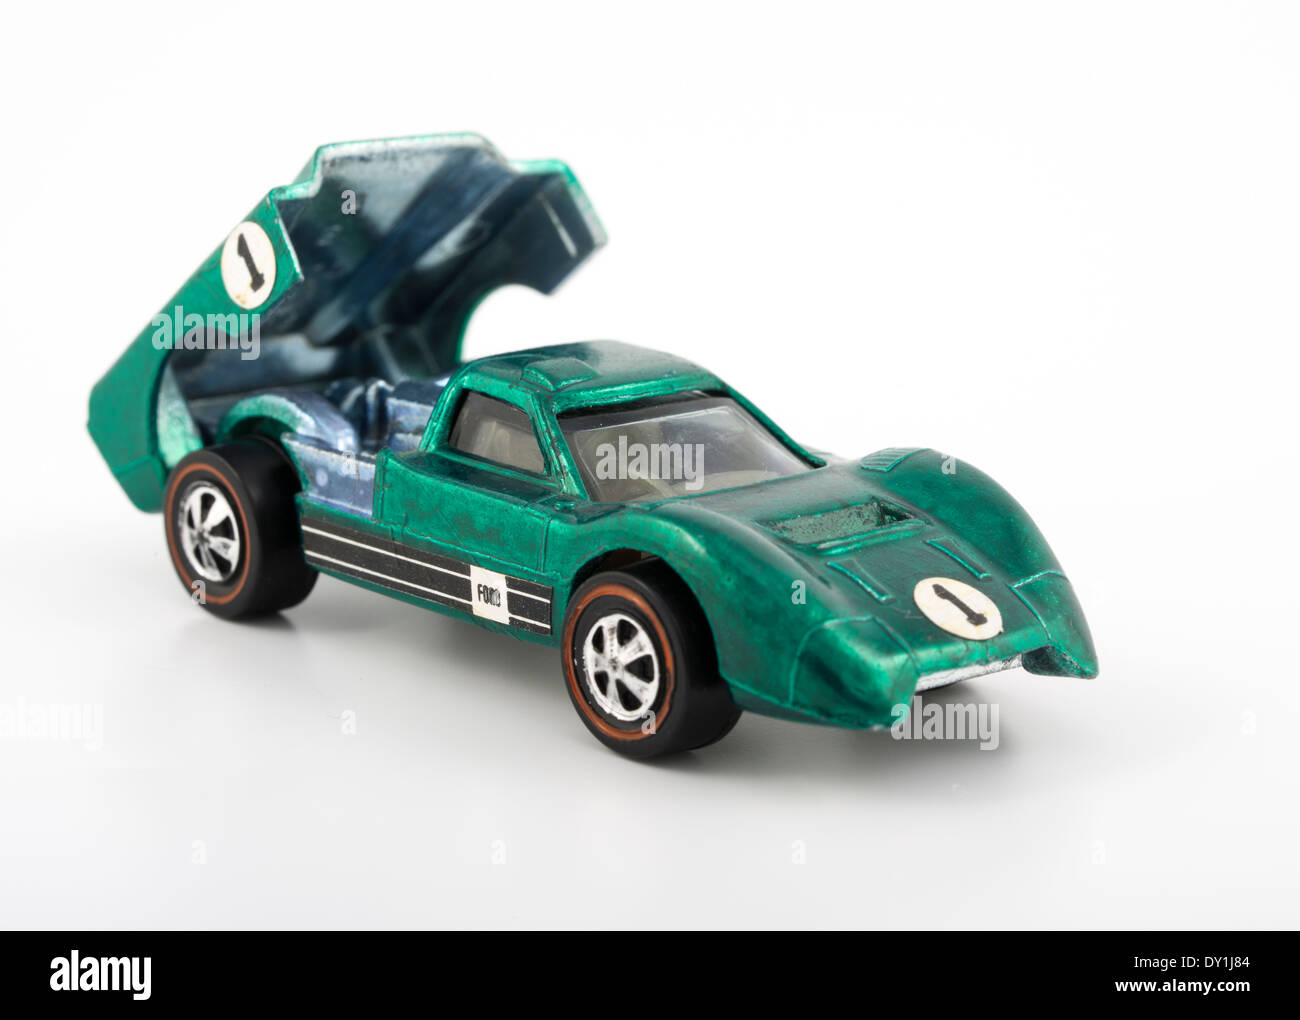 Ford verde J-Coches Hot Wheels die-cast coches de juguete de Mattel 1968 con pintura Spectraflame Foto de stock